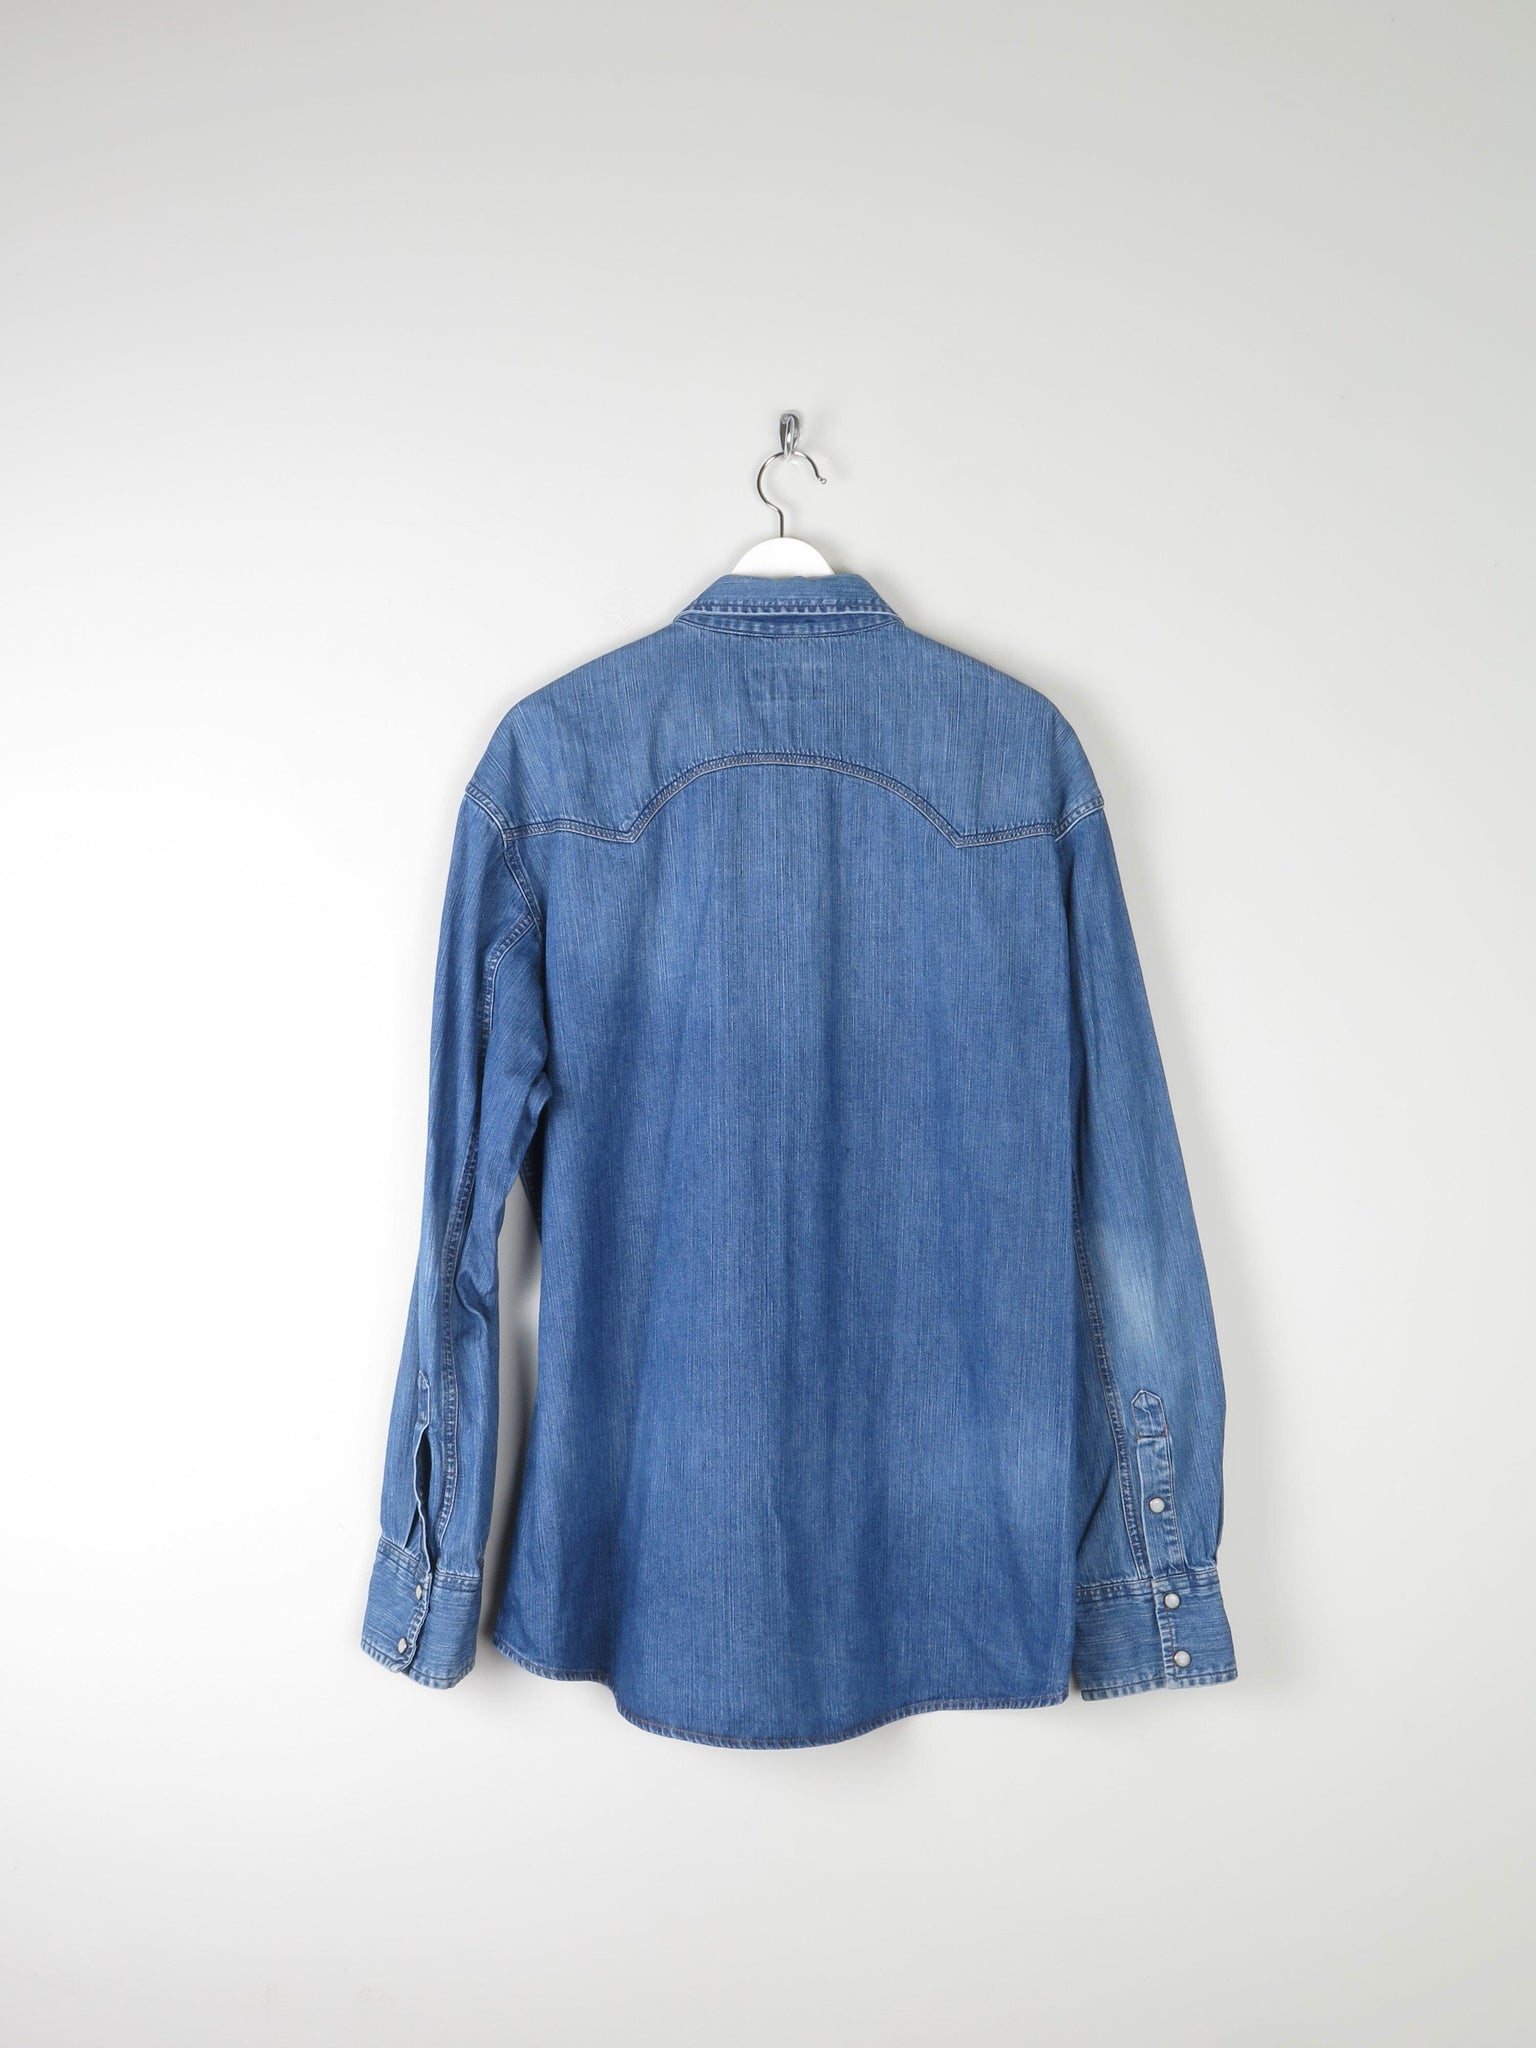 Men's Blue Western Denim Wrangler Shirt XL - The Harlequin